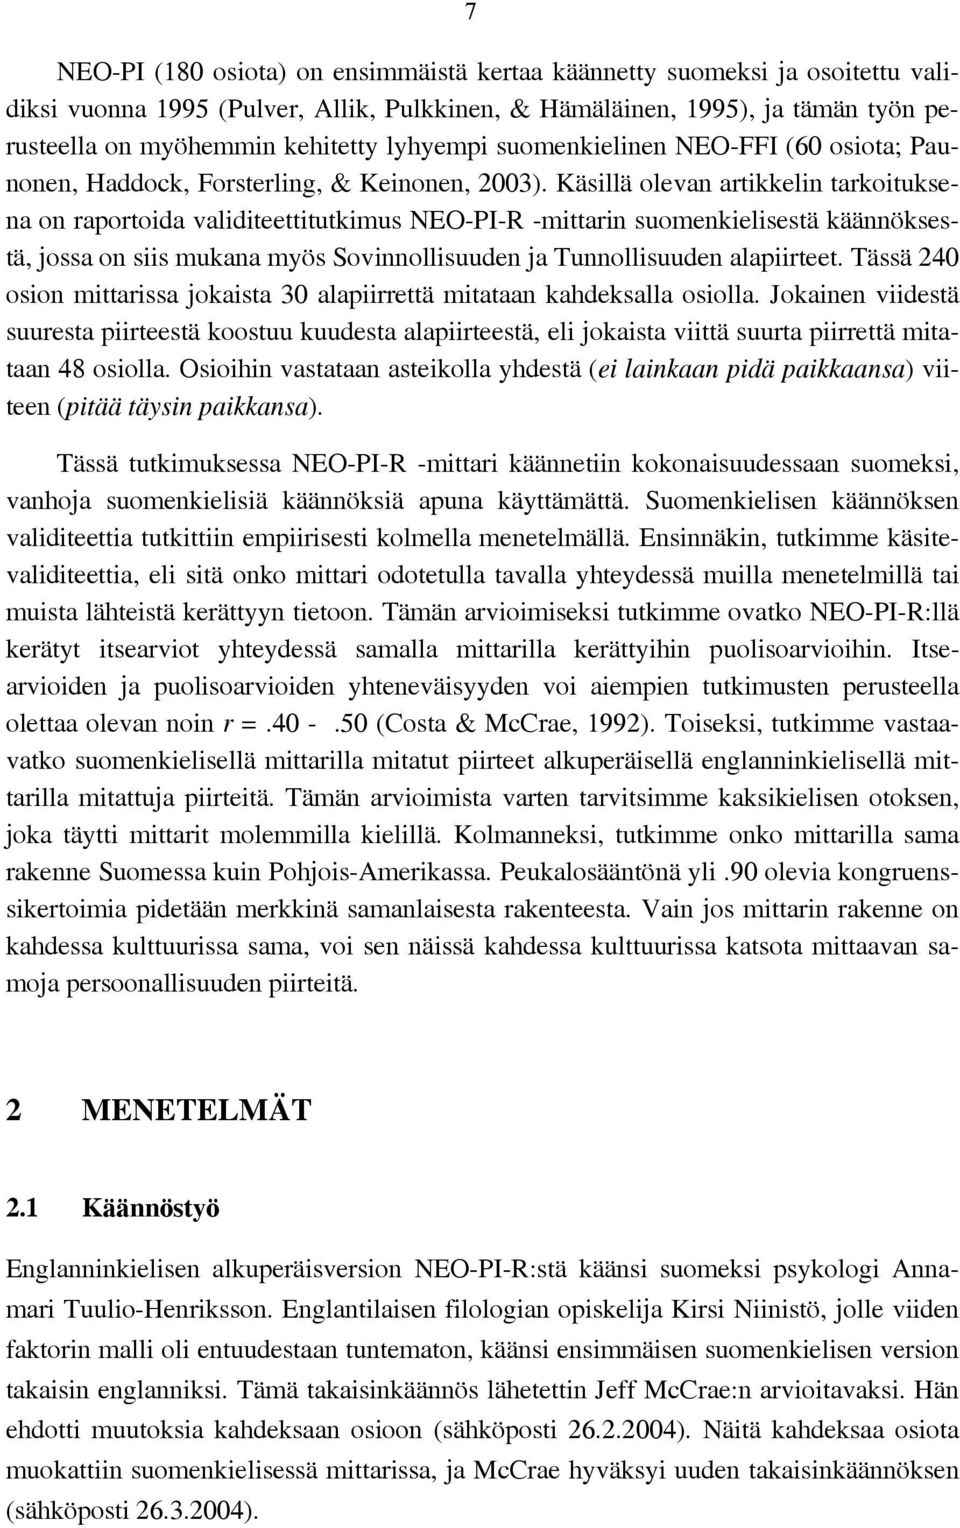 Käsillä olevan artikkelin tarkoituksena on raportoida validiteettitutkimus NEO-PI-R -mittarin suomenkielisestä käännöksestä, jossa on siis mukana myös Sovinnollisuuden ja Tunnollisuuden alapiirteet.